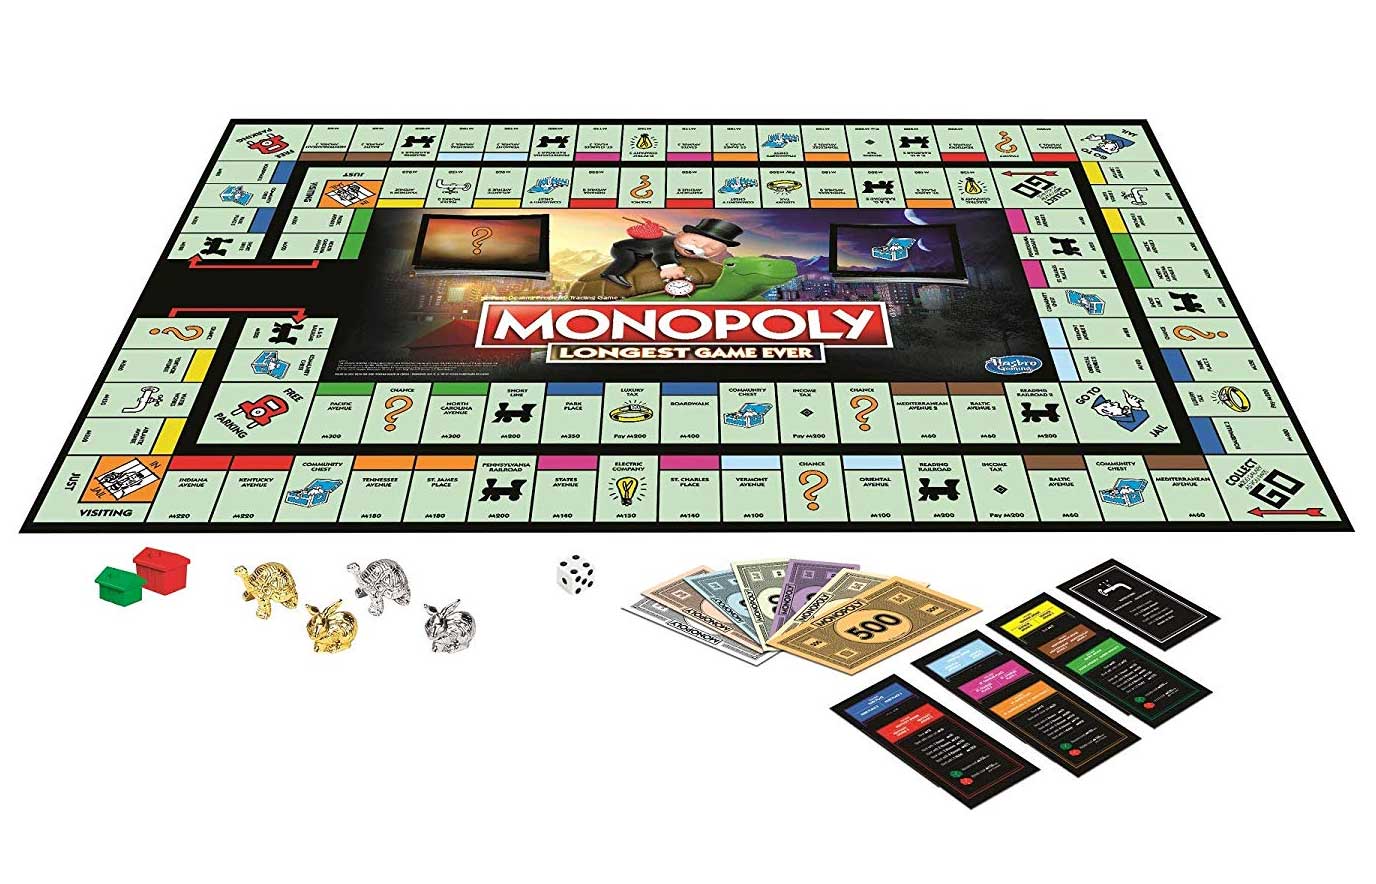 Das längste Monopoly-Spiel der Welt: "Longest Game Ever" monopoly-longest-game-ever_02 